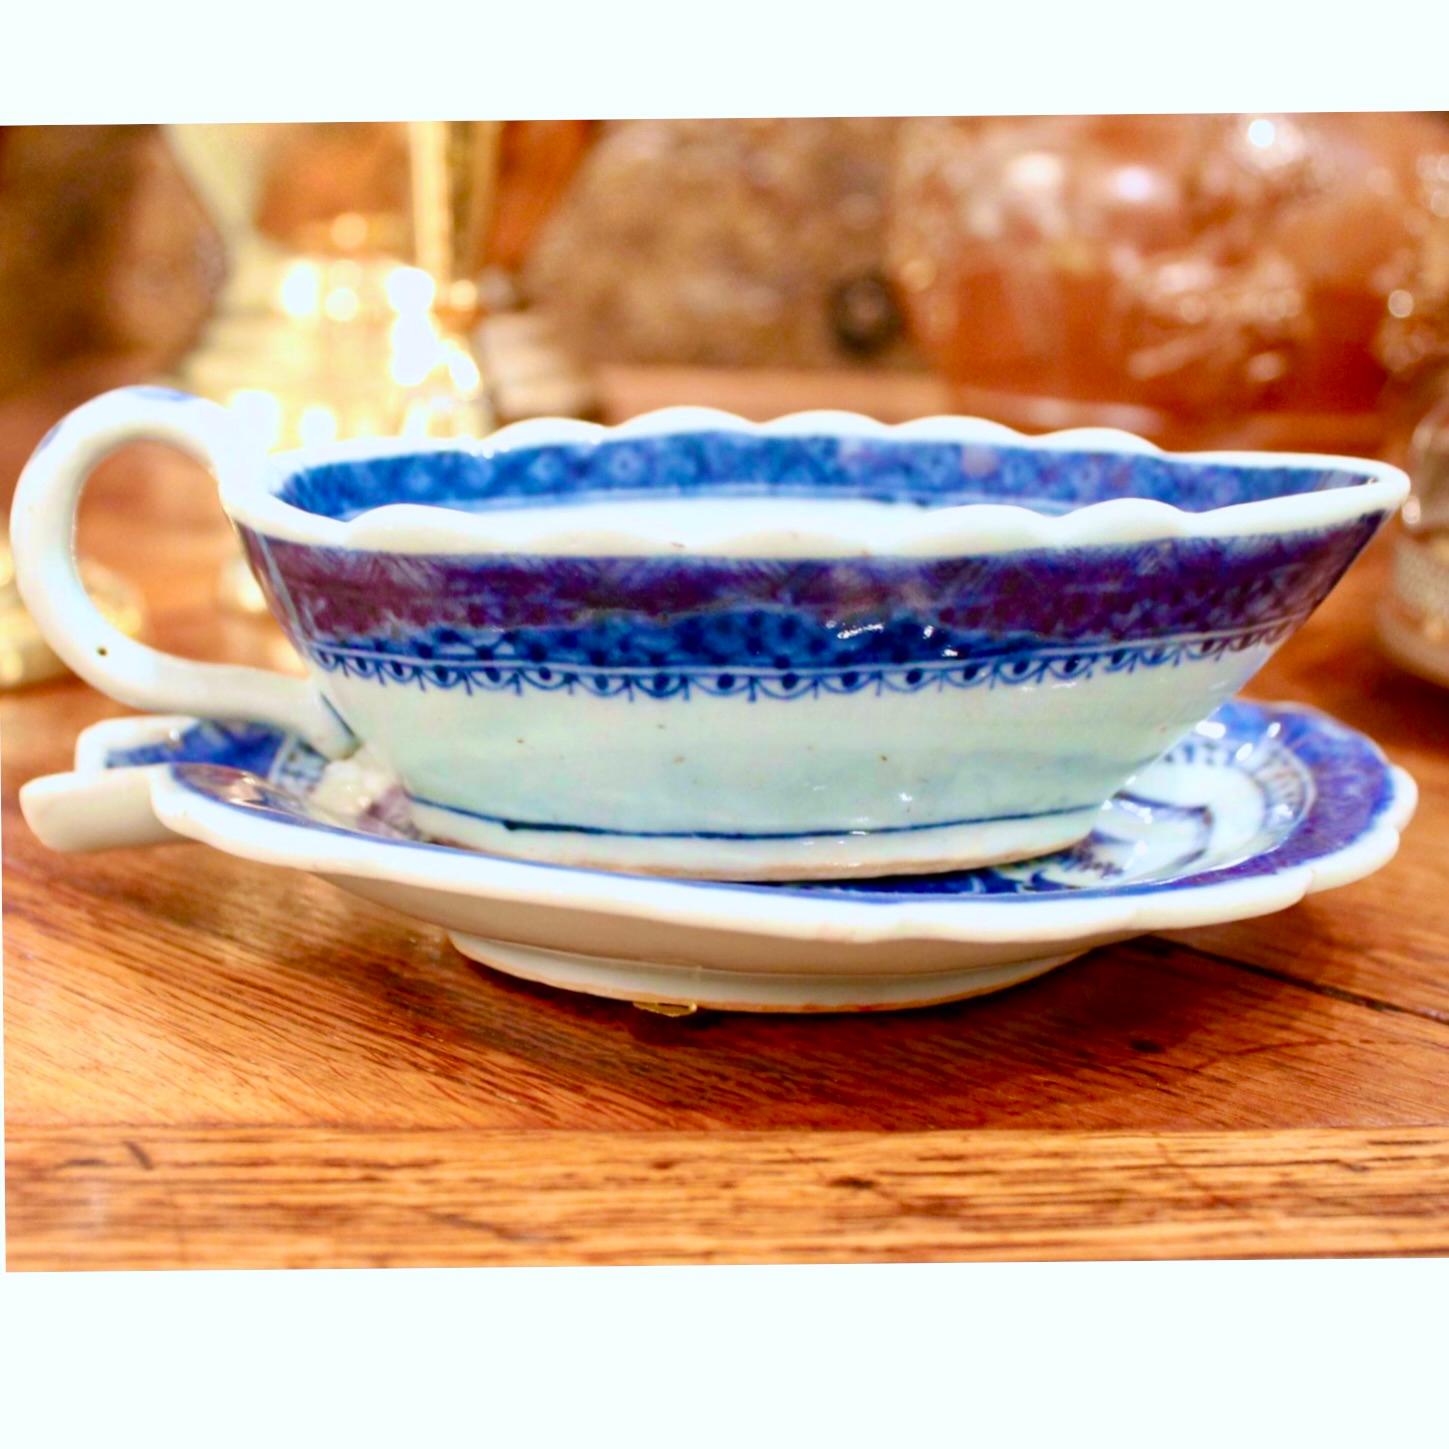 Ein ungewöhnliches Servierstück: eine Soßenkanne aus Nanking aus dem frühen 19. Jahrhundert mit dazugehörigem Untersatz in Form eines Blattes. Dieses Muster ist ein enger Verwandter des blau-weißen Canton-Porzellans, jedoch mit mehr Details. Sauce